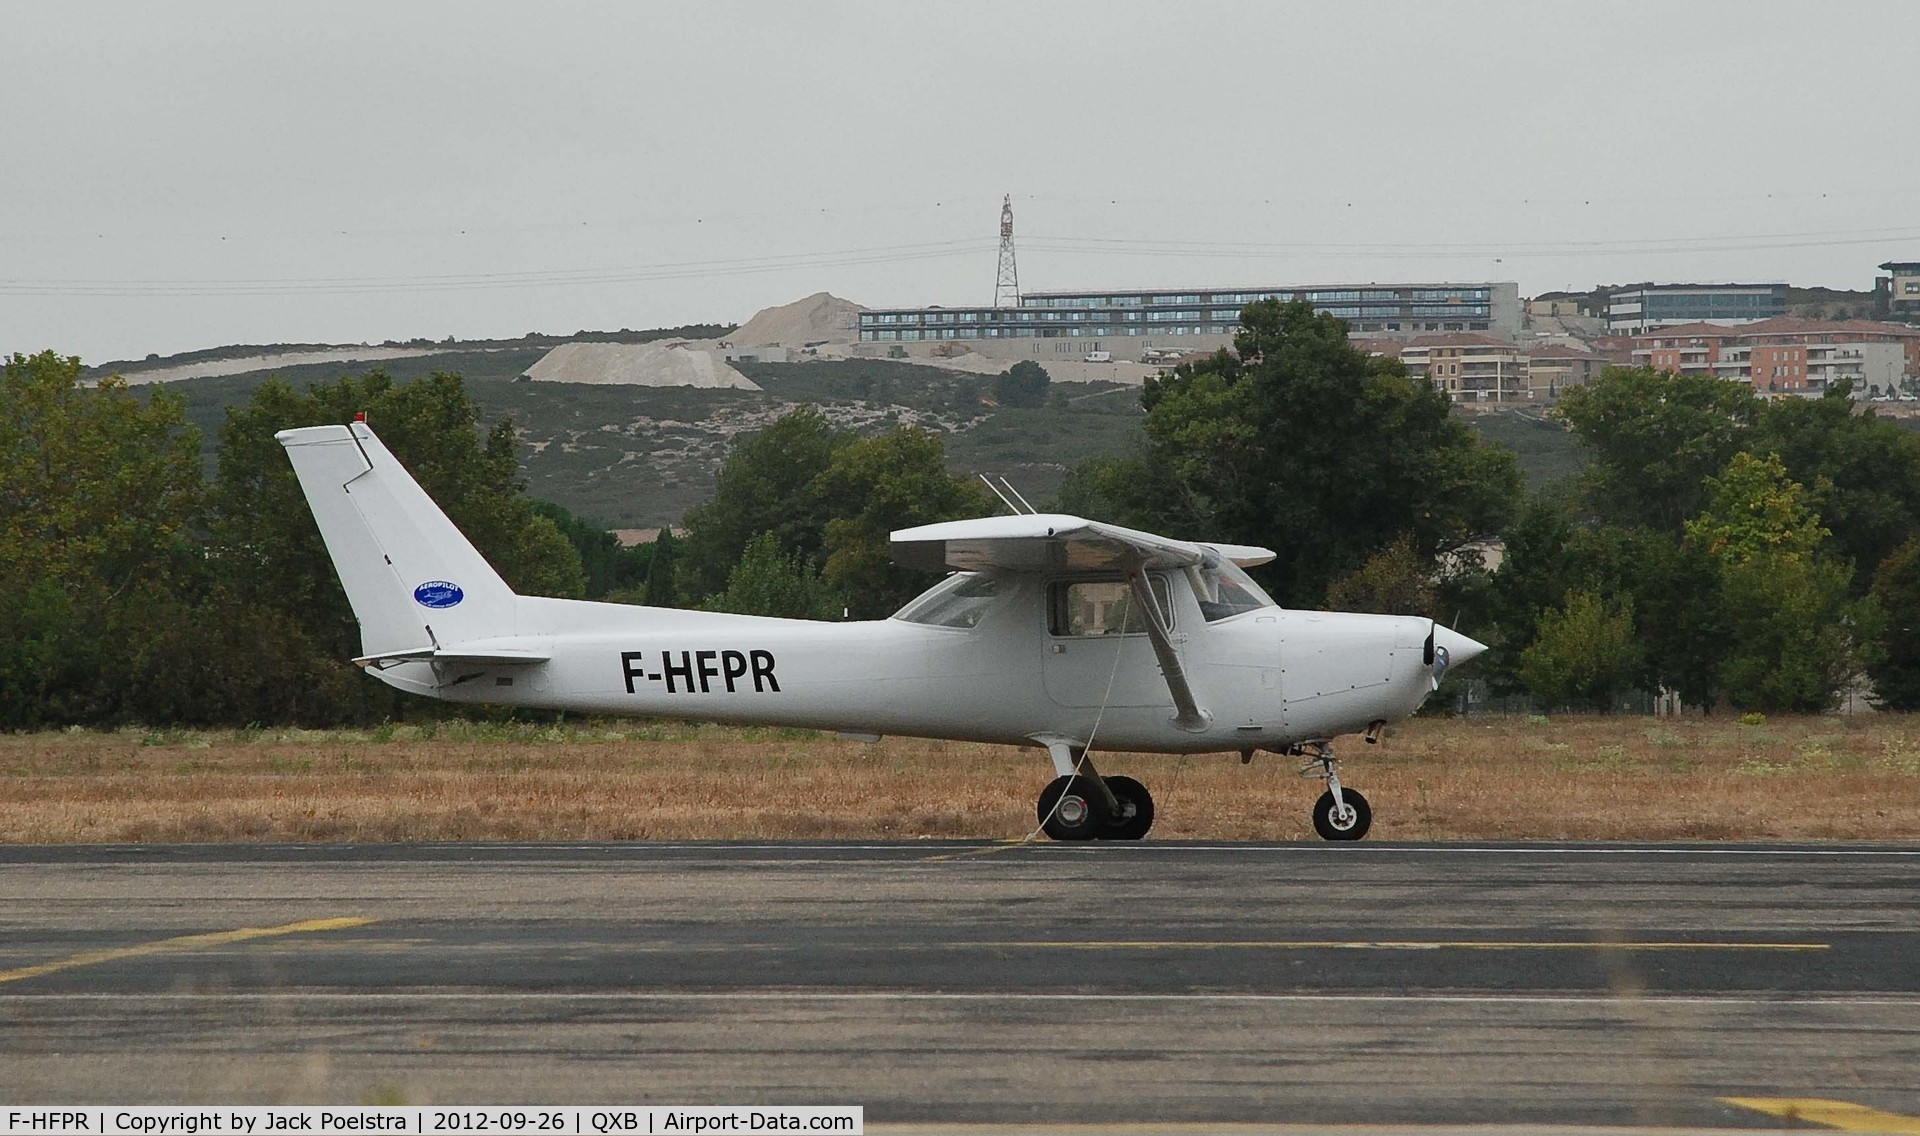 F-HFPR, Reims F152 C/N 1701, At ramp of Aix en Provence